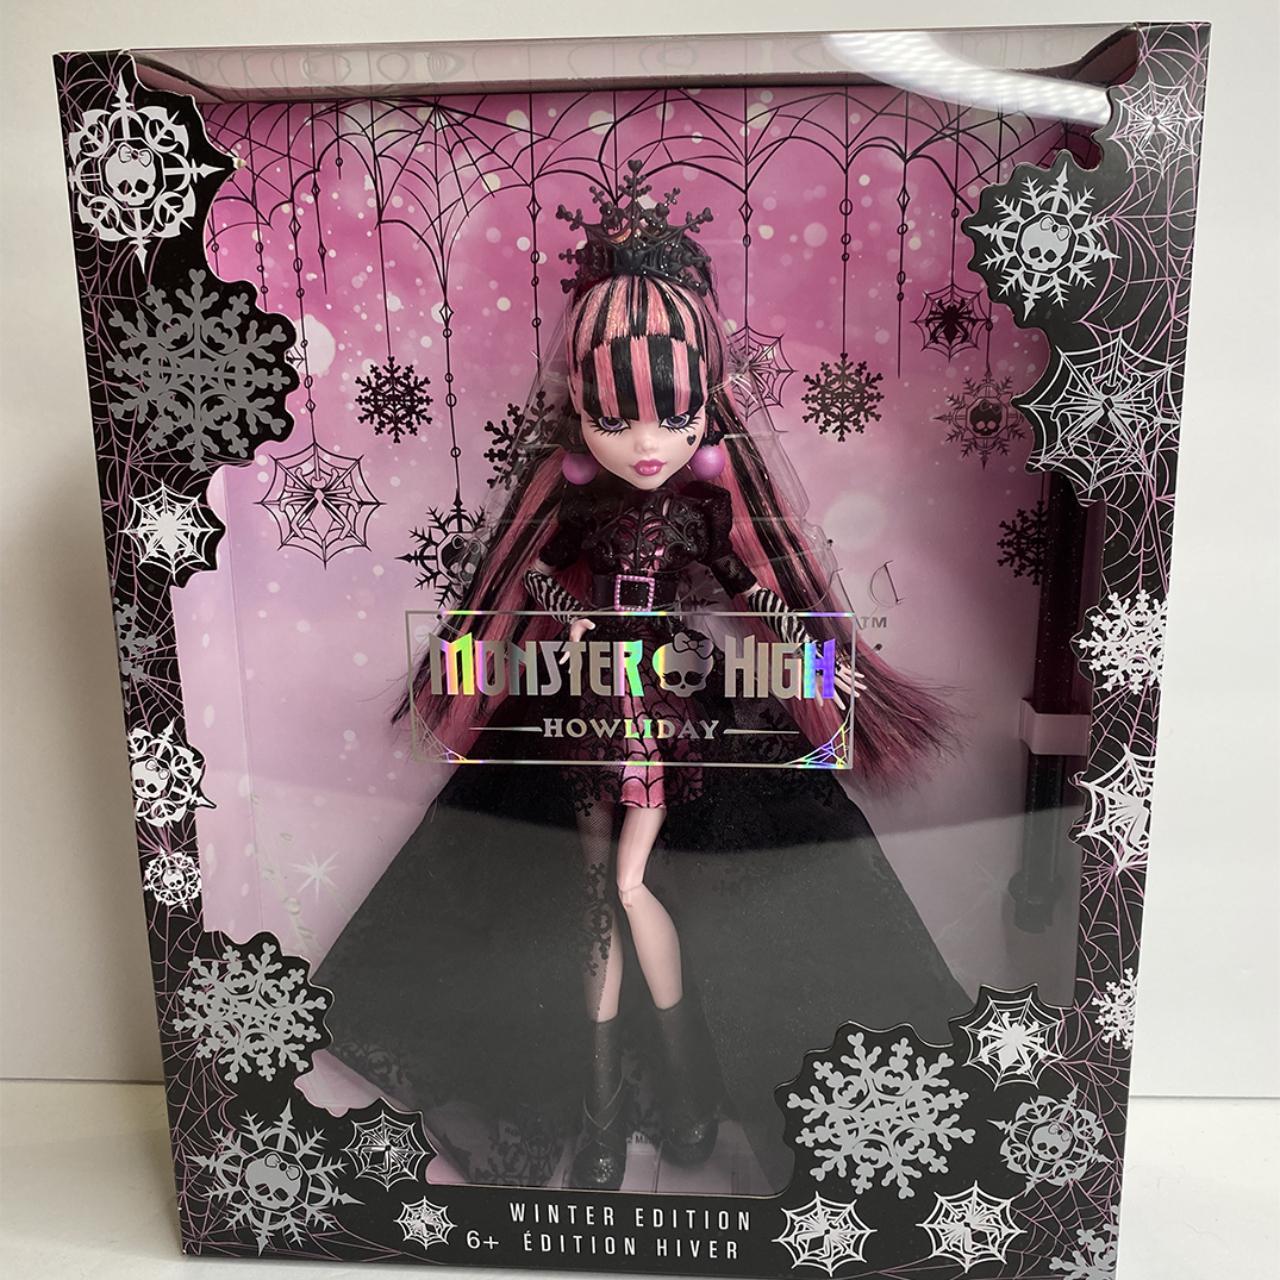 Monster High Howliday Winter Edition boneca Draculaura coleção de